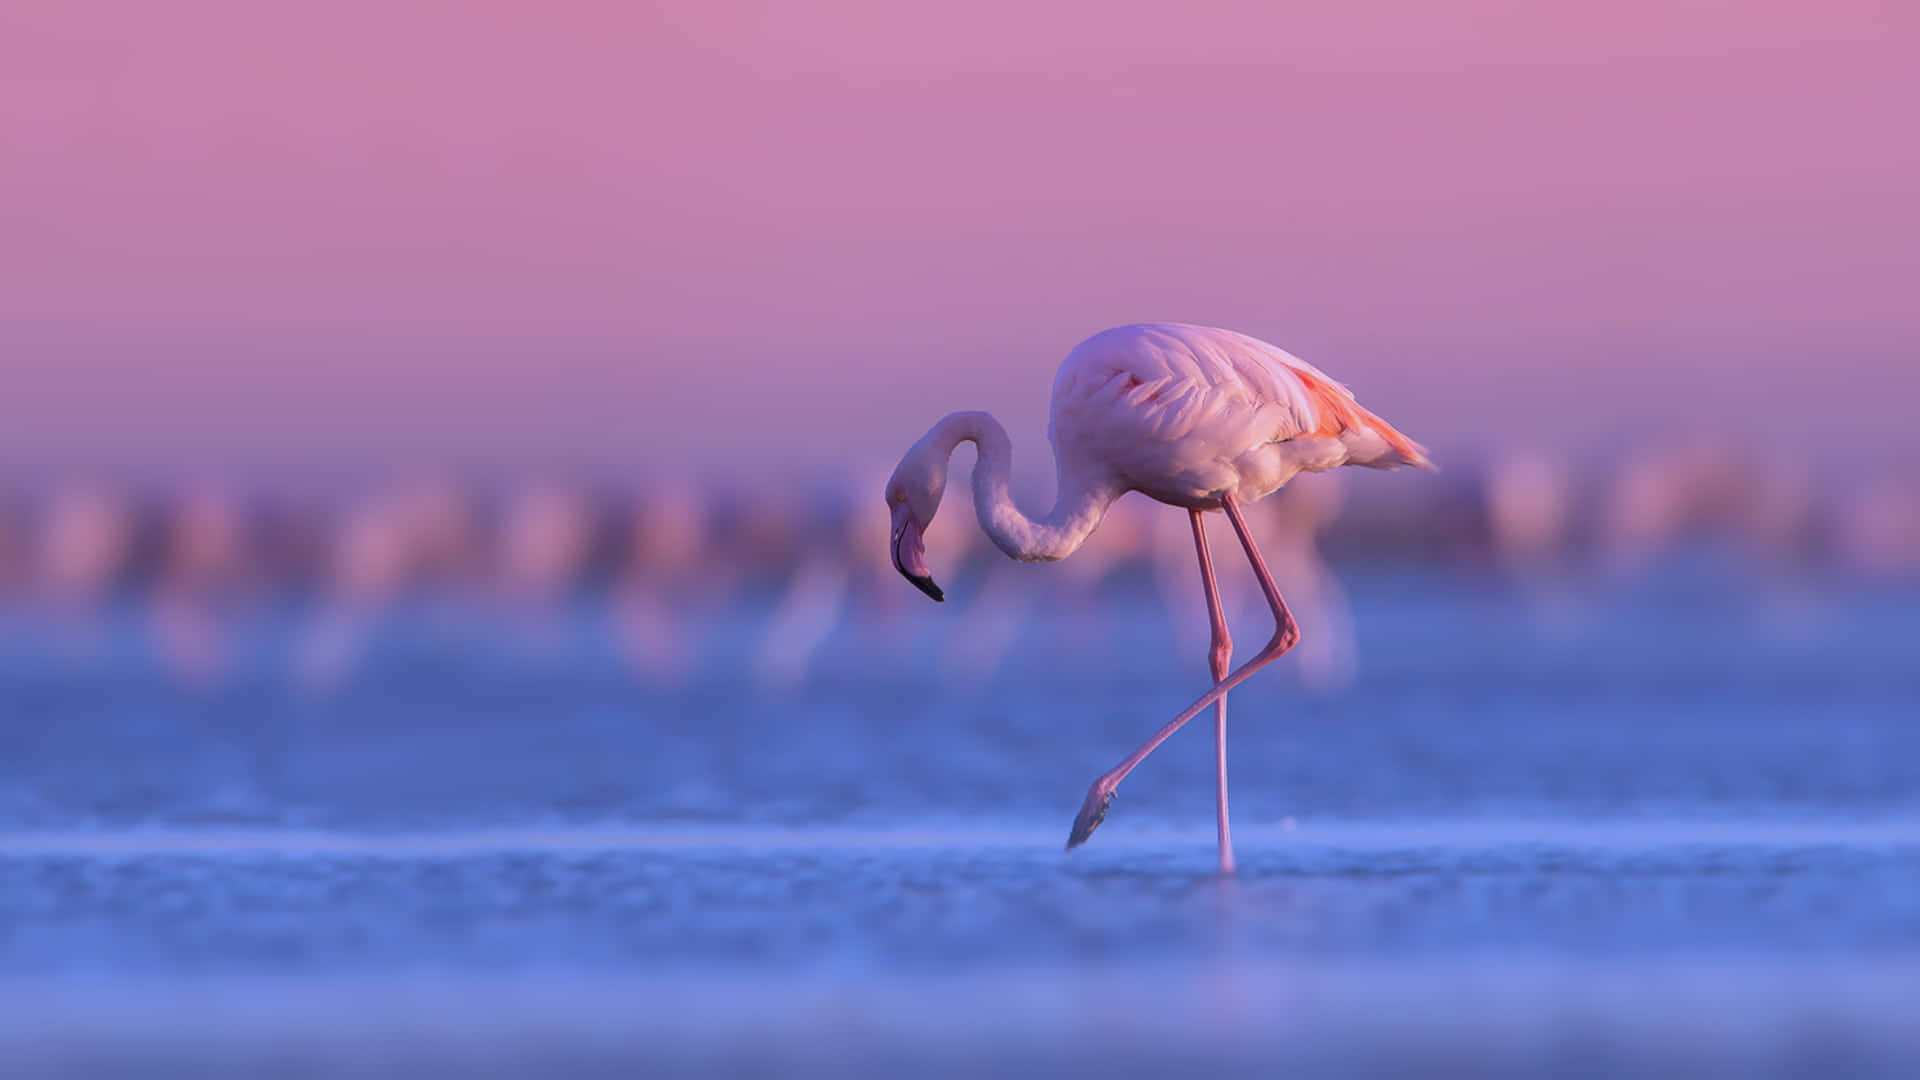 Ensmuk Pink Flamingo Mod En Livlig, Drømmeagtig Baggrund.